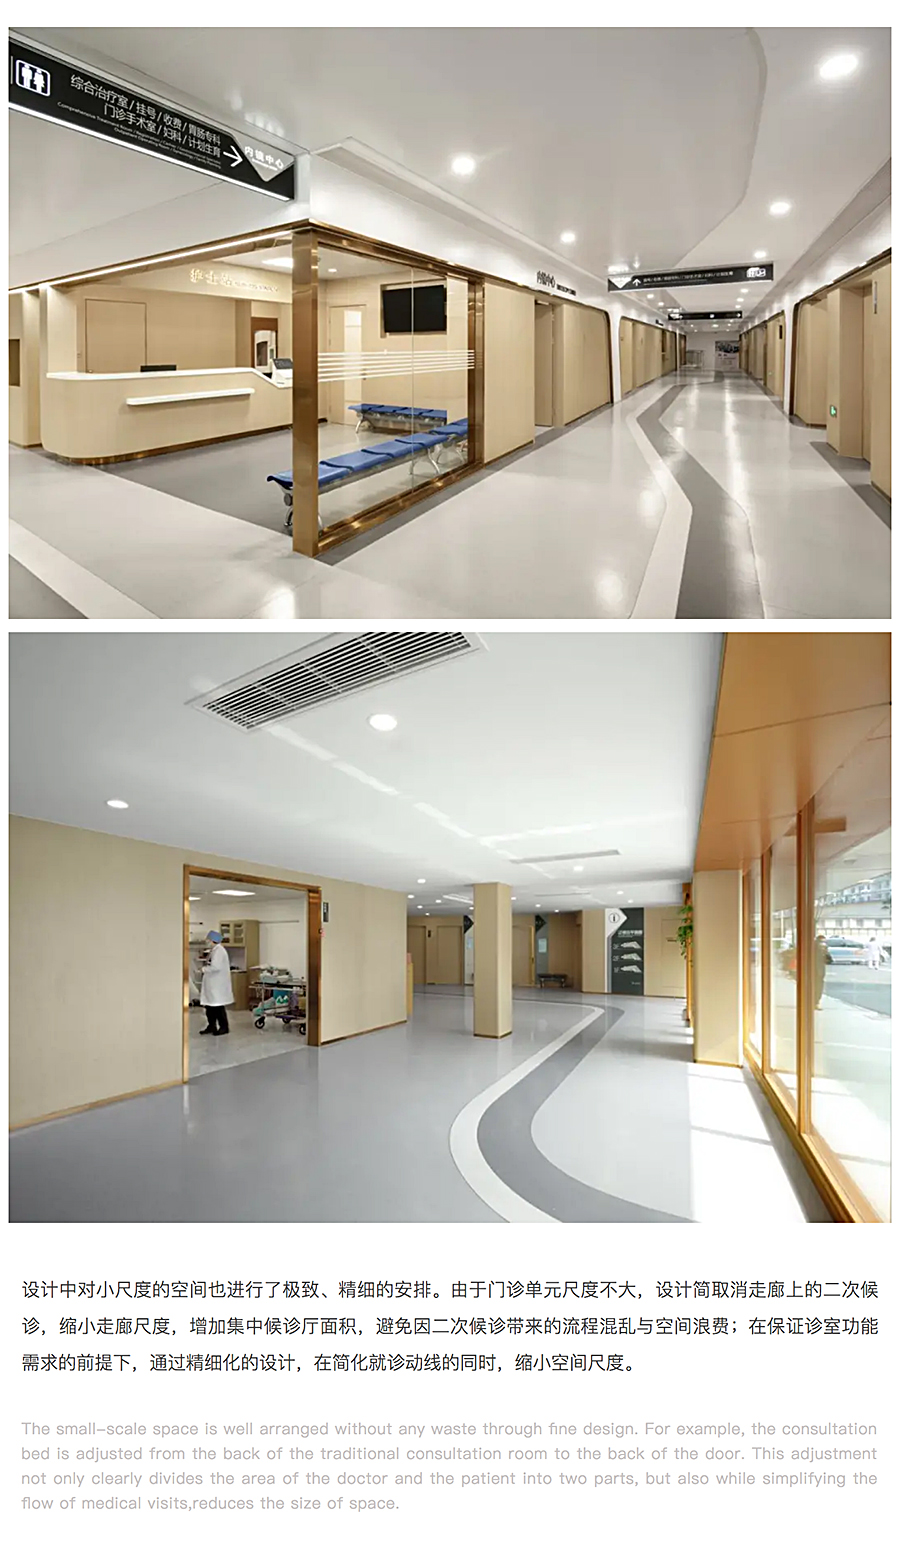 ⽆微不⾄，精益化思维下的上海安达医院⻔急诊改造_0010_图层-11.jpg